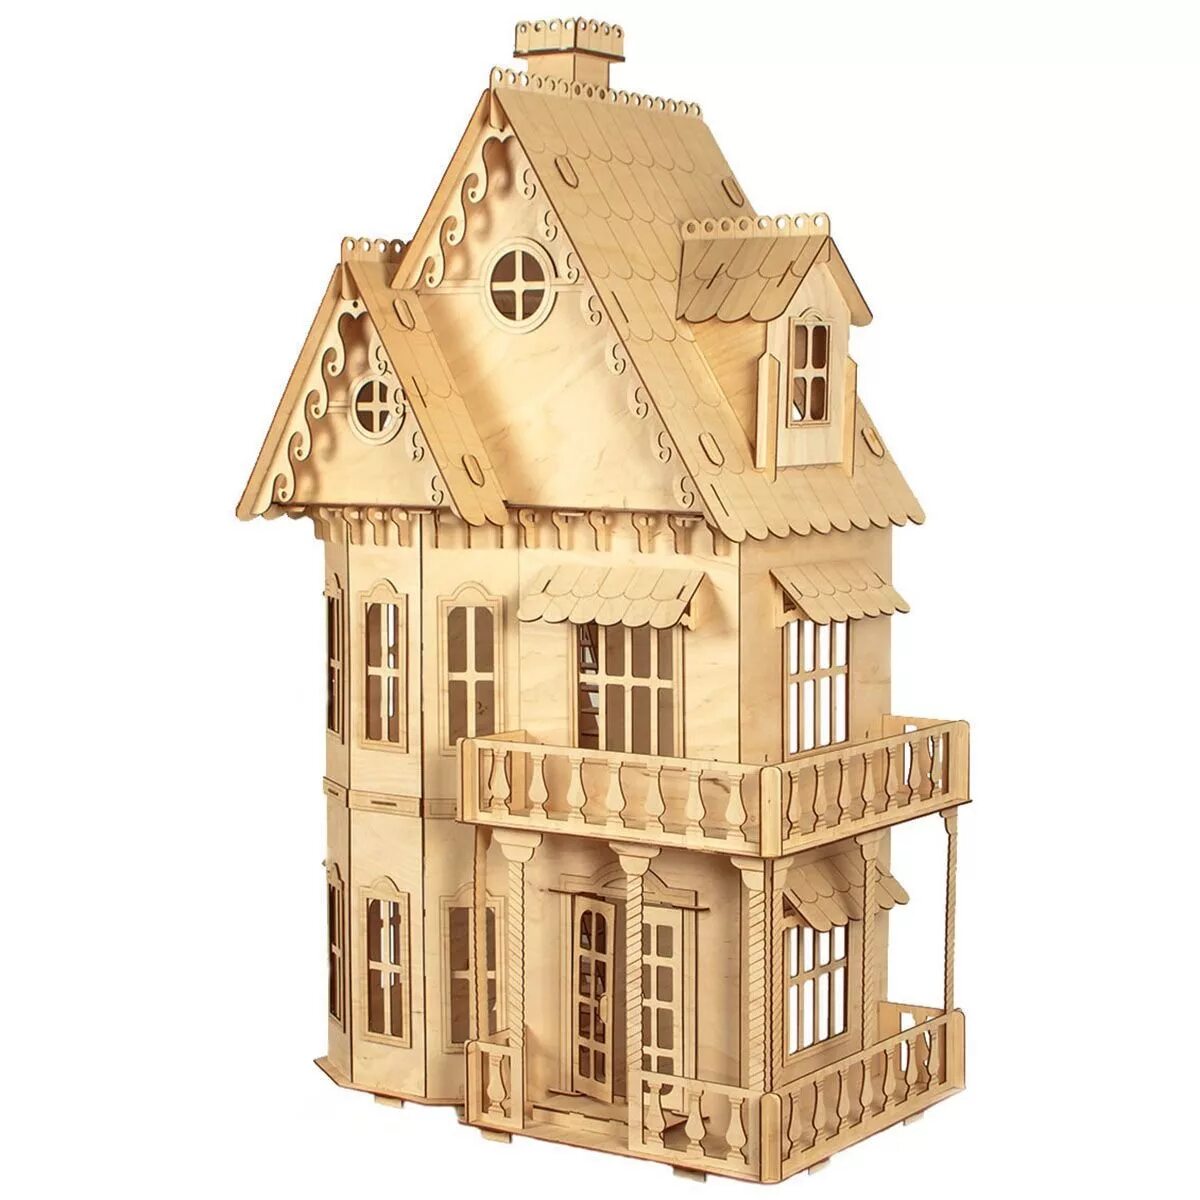 Домик сборный деревянный. Модель домика. Деревянный конструктор дом. Сборная модель домика. Сборные модели домов